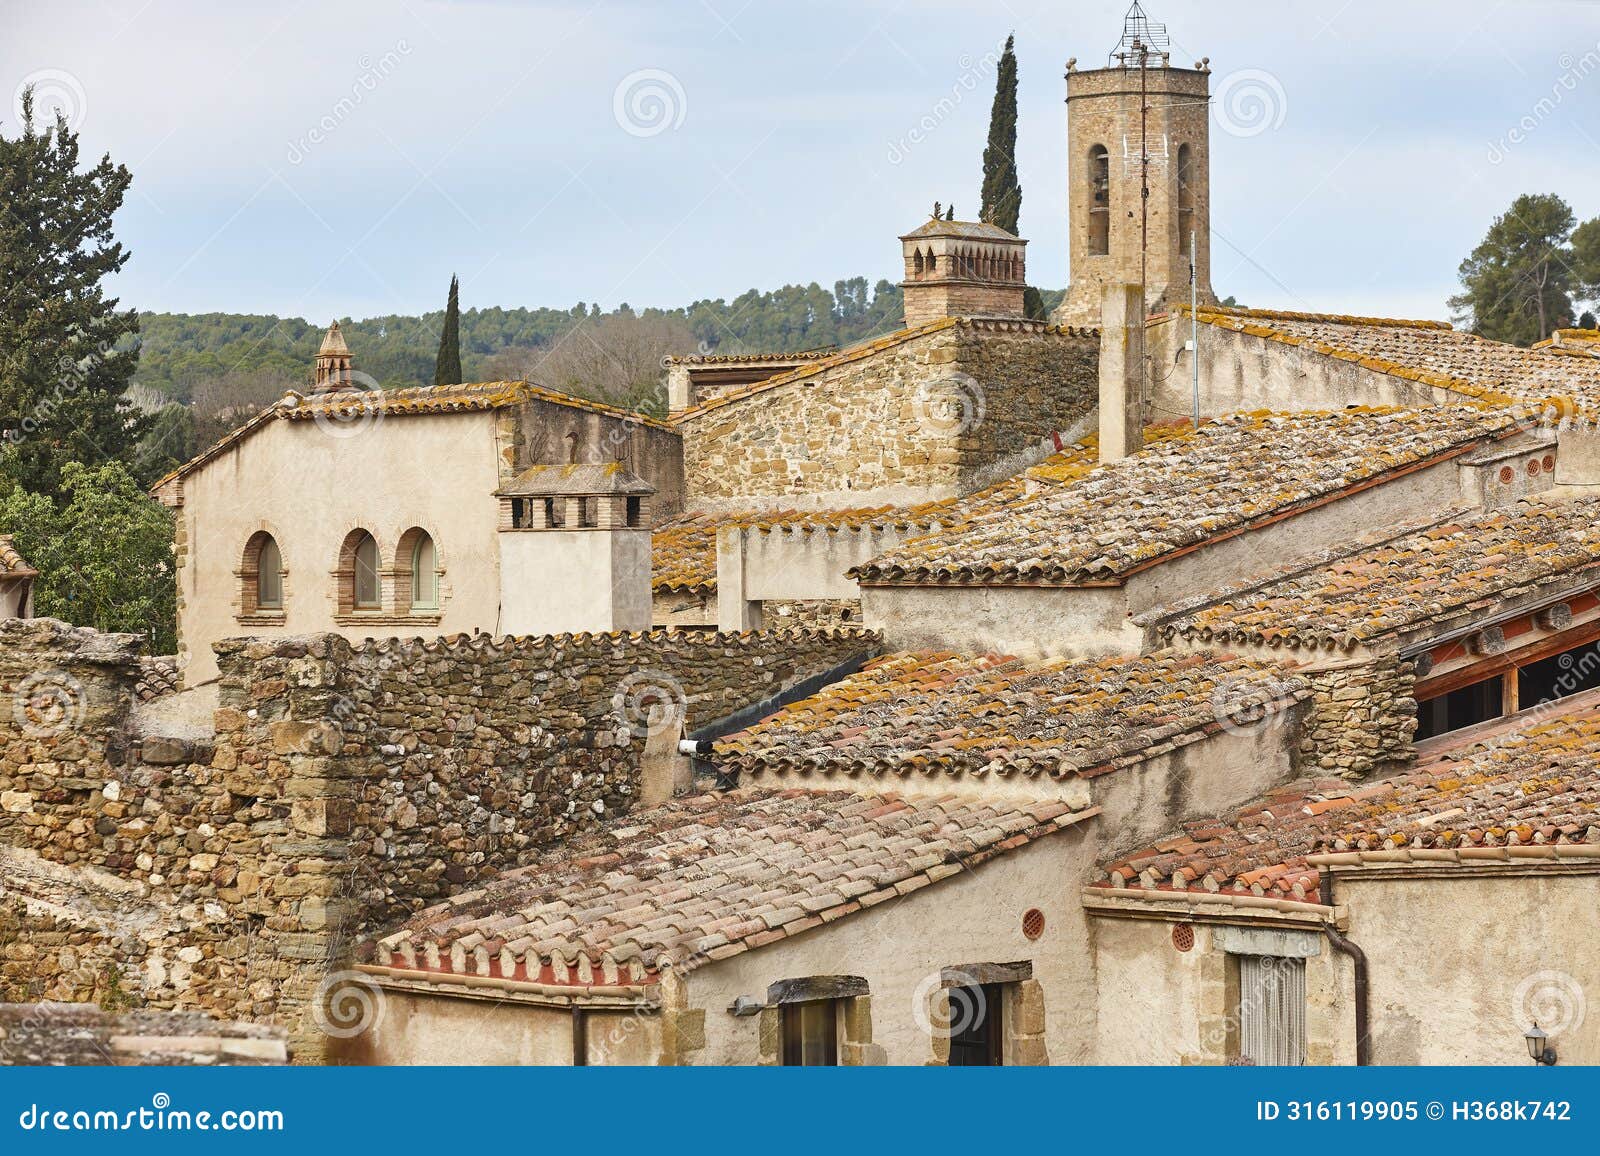 picturesque medieval village of monells. girona, costa brava. catalunya. spain